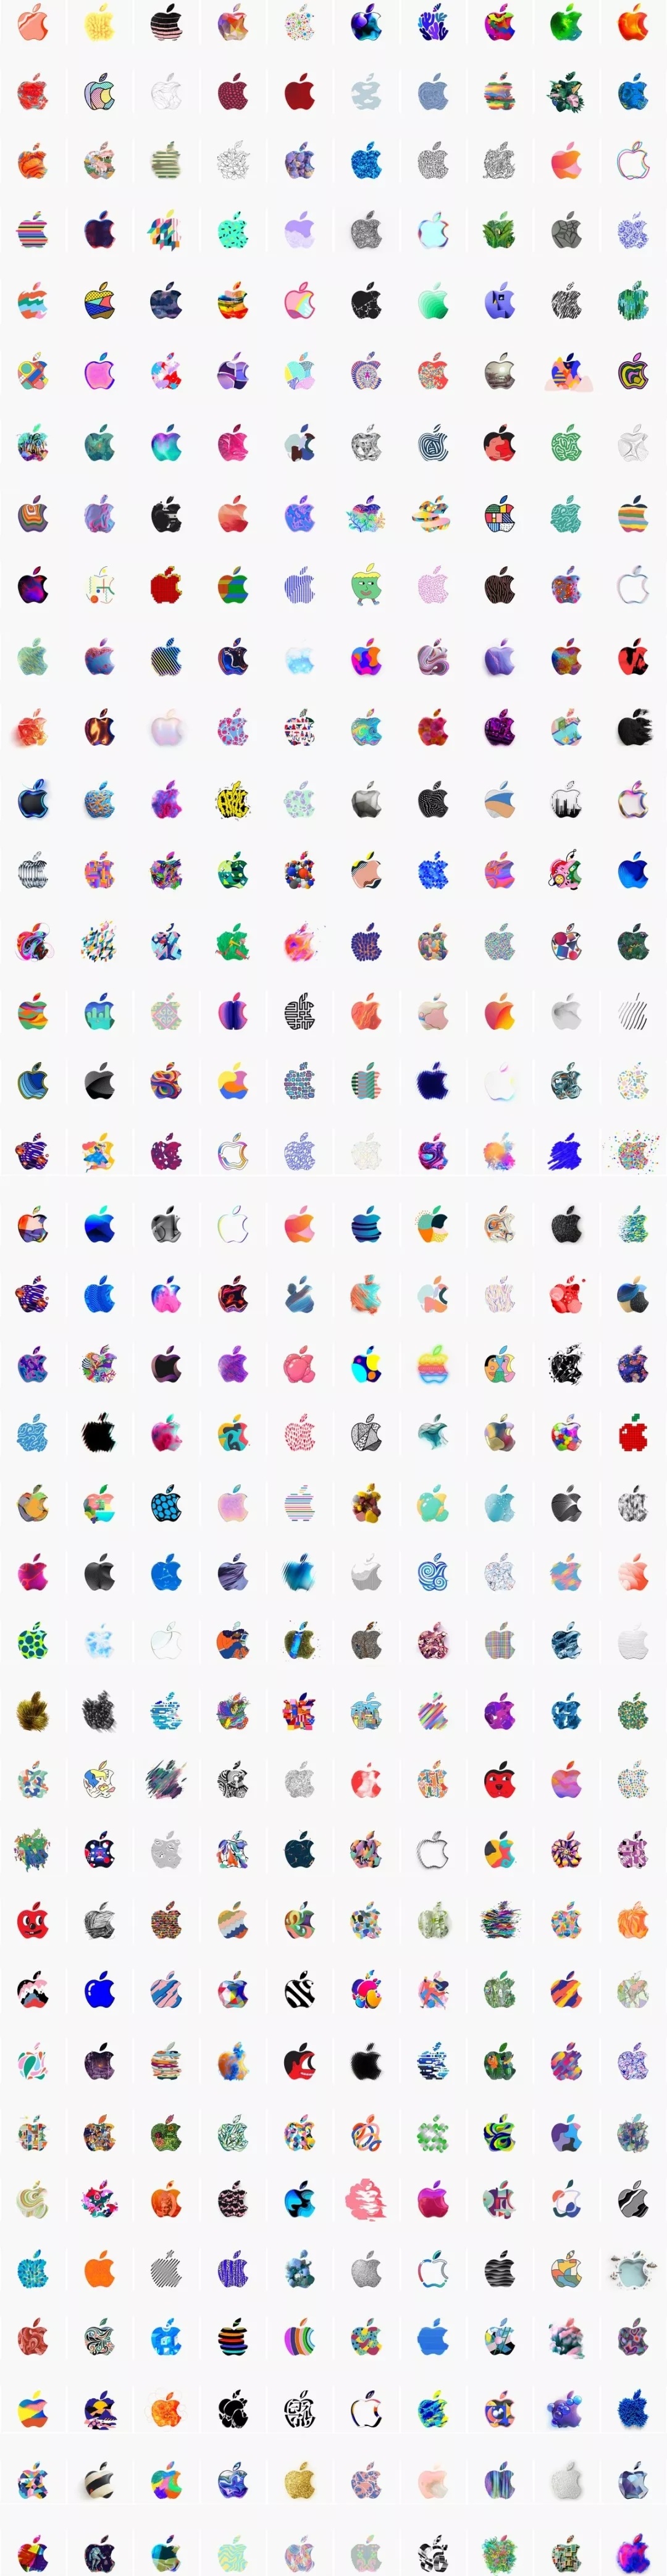 别刷了,一共 370 个苹果 logo 全在这儿了 